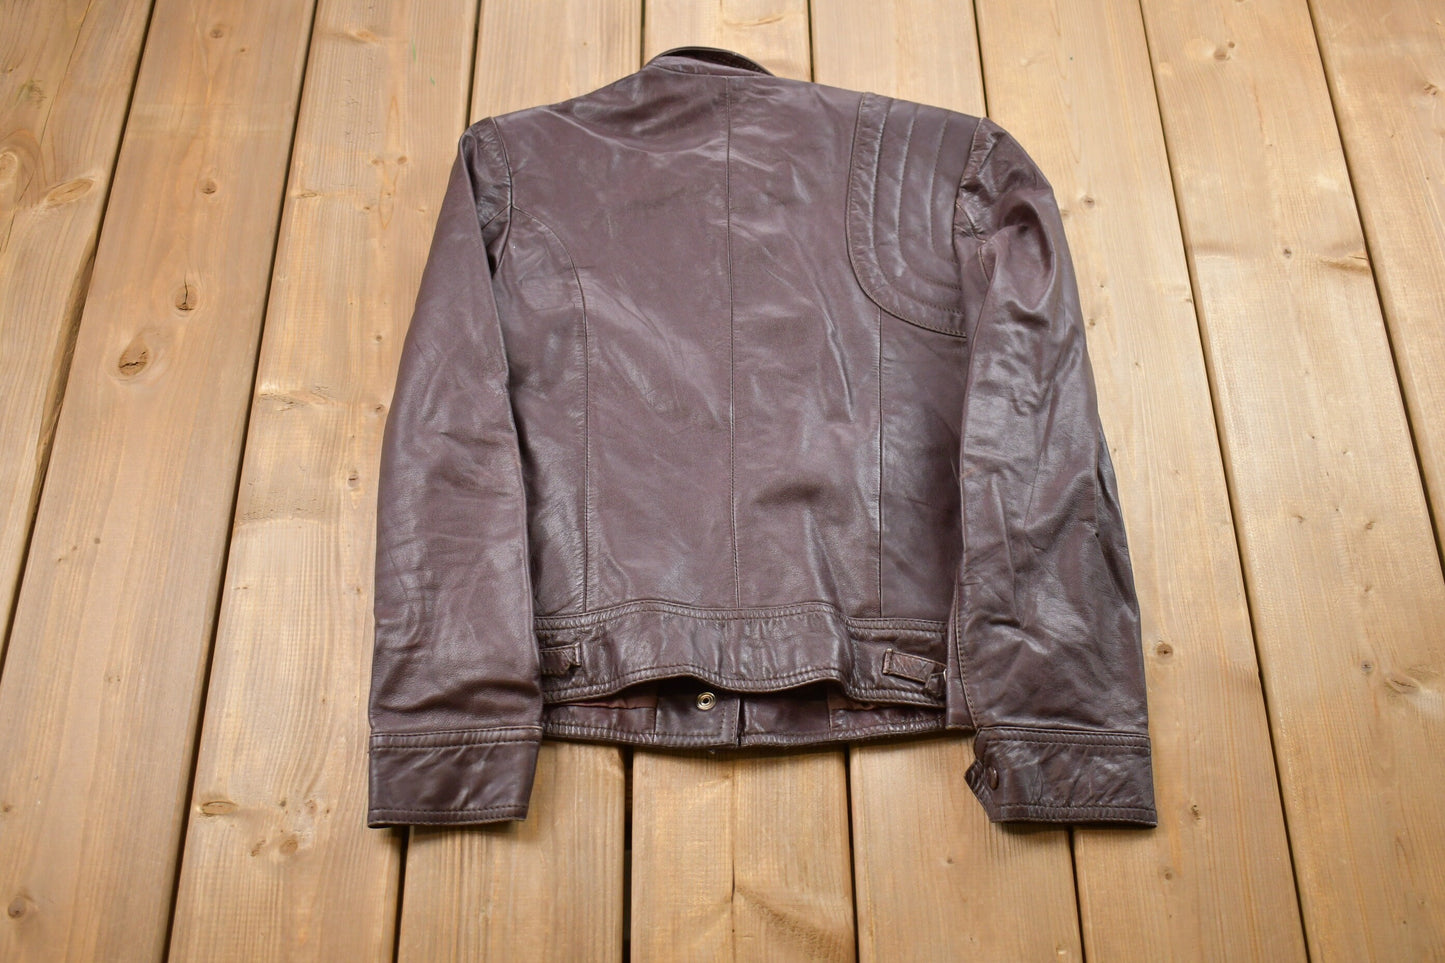 Vintage 1980s Kinetic Leather Jacket / Fall Outerwear / Leather Coat / Winter Outerwear / Streetwear Fashion / Suede Jacket / Biker Jacket